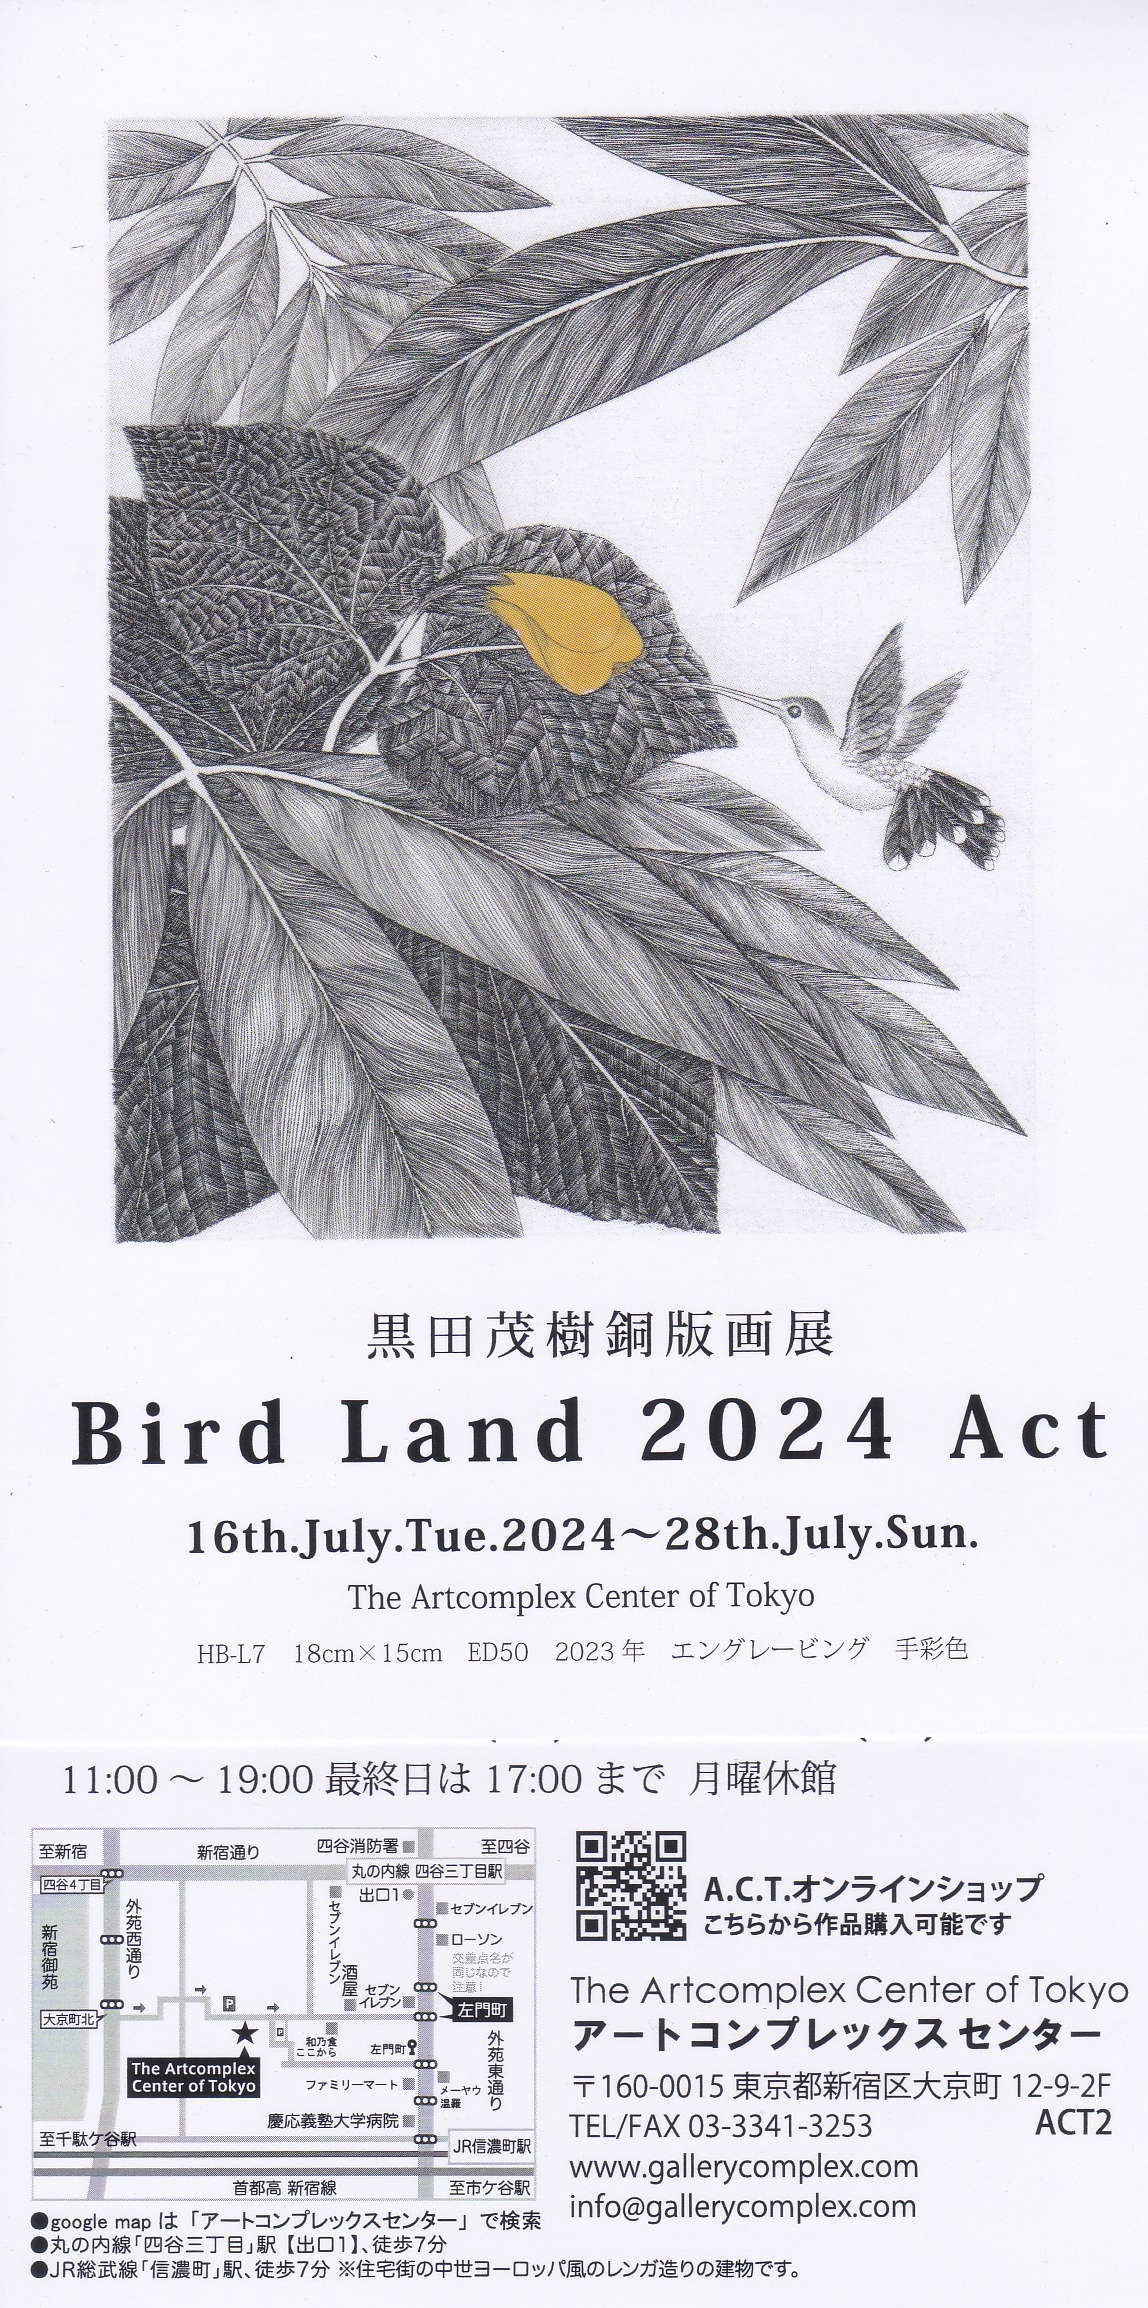 黒田茂樹銅版画展「Bird Land 2024 ACT」 - 一般社団法人 多摩美術大学校友会